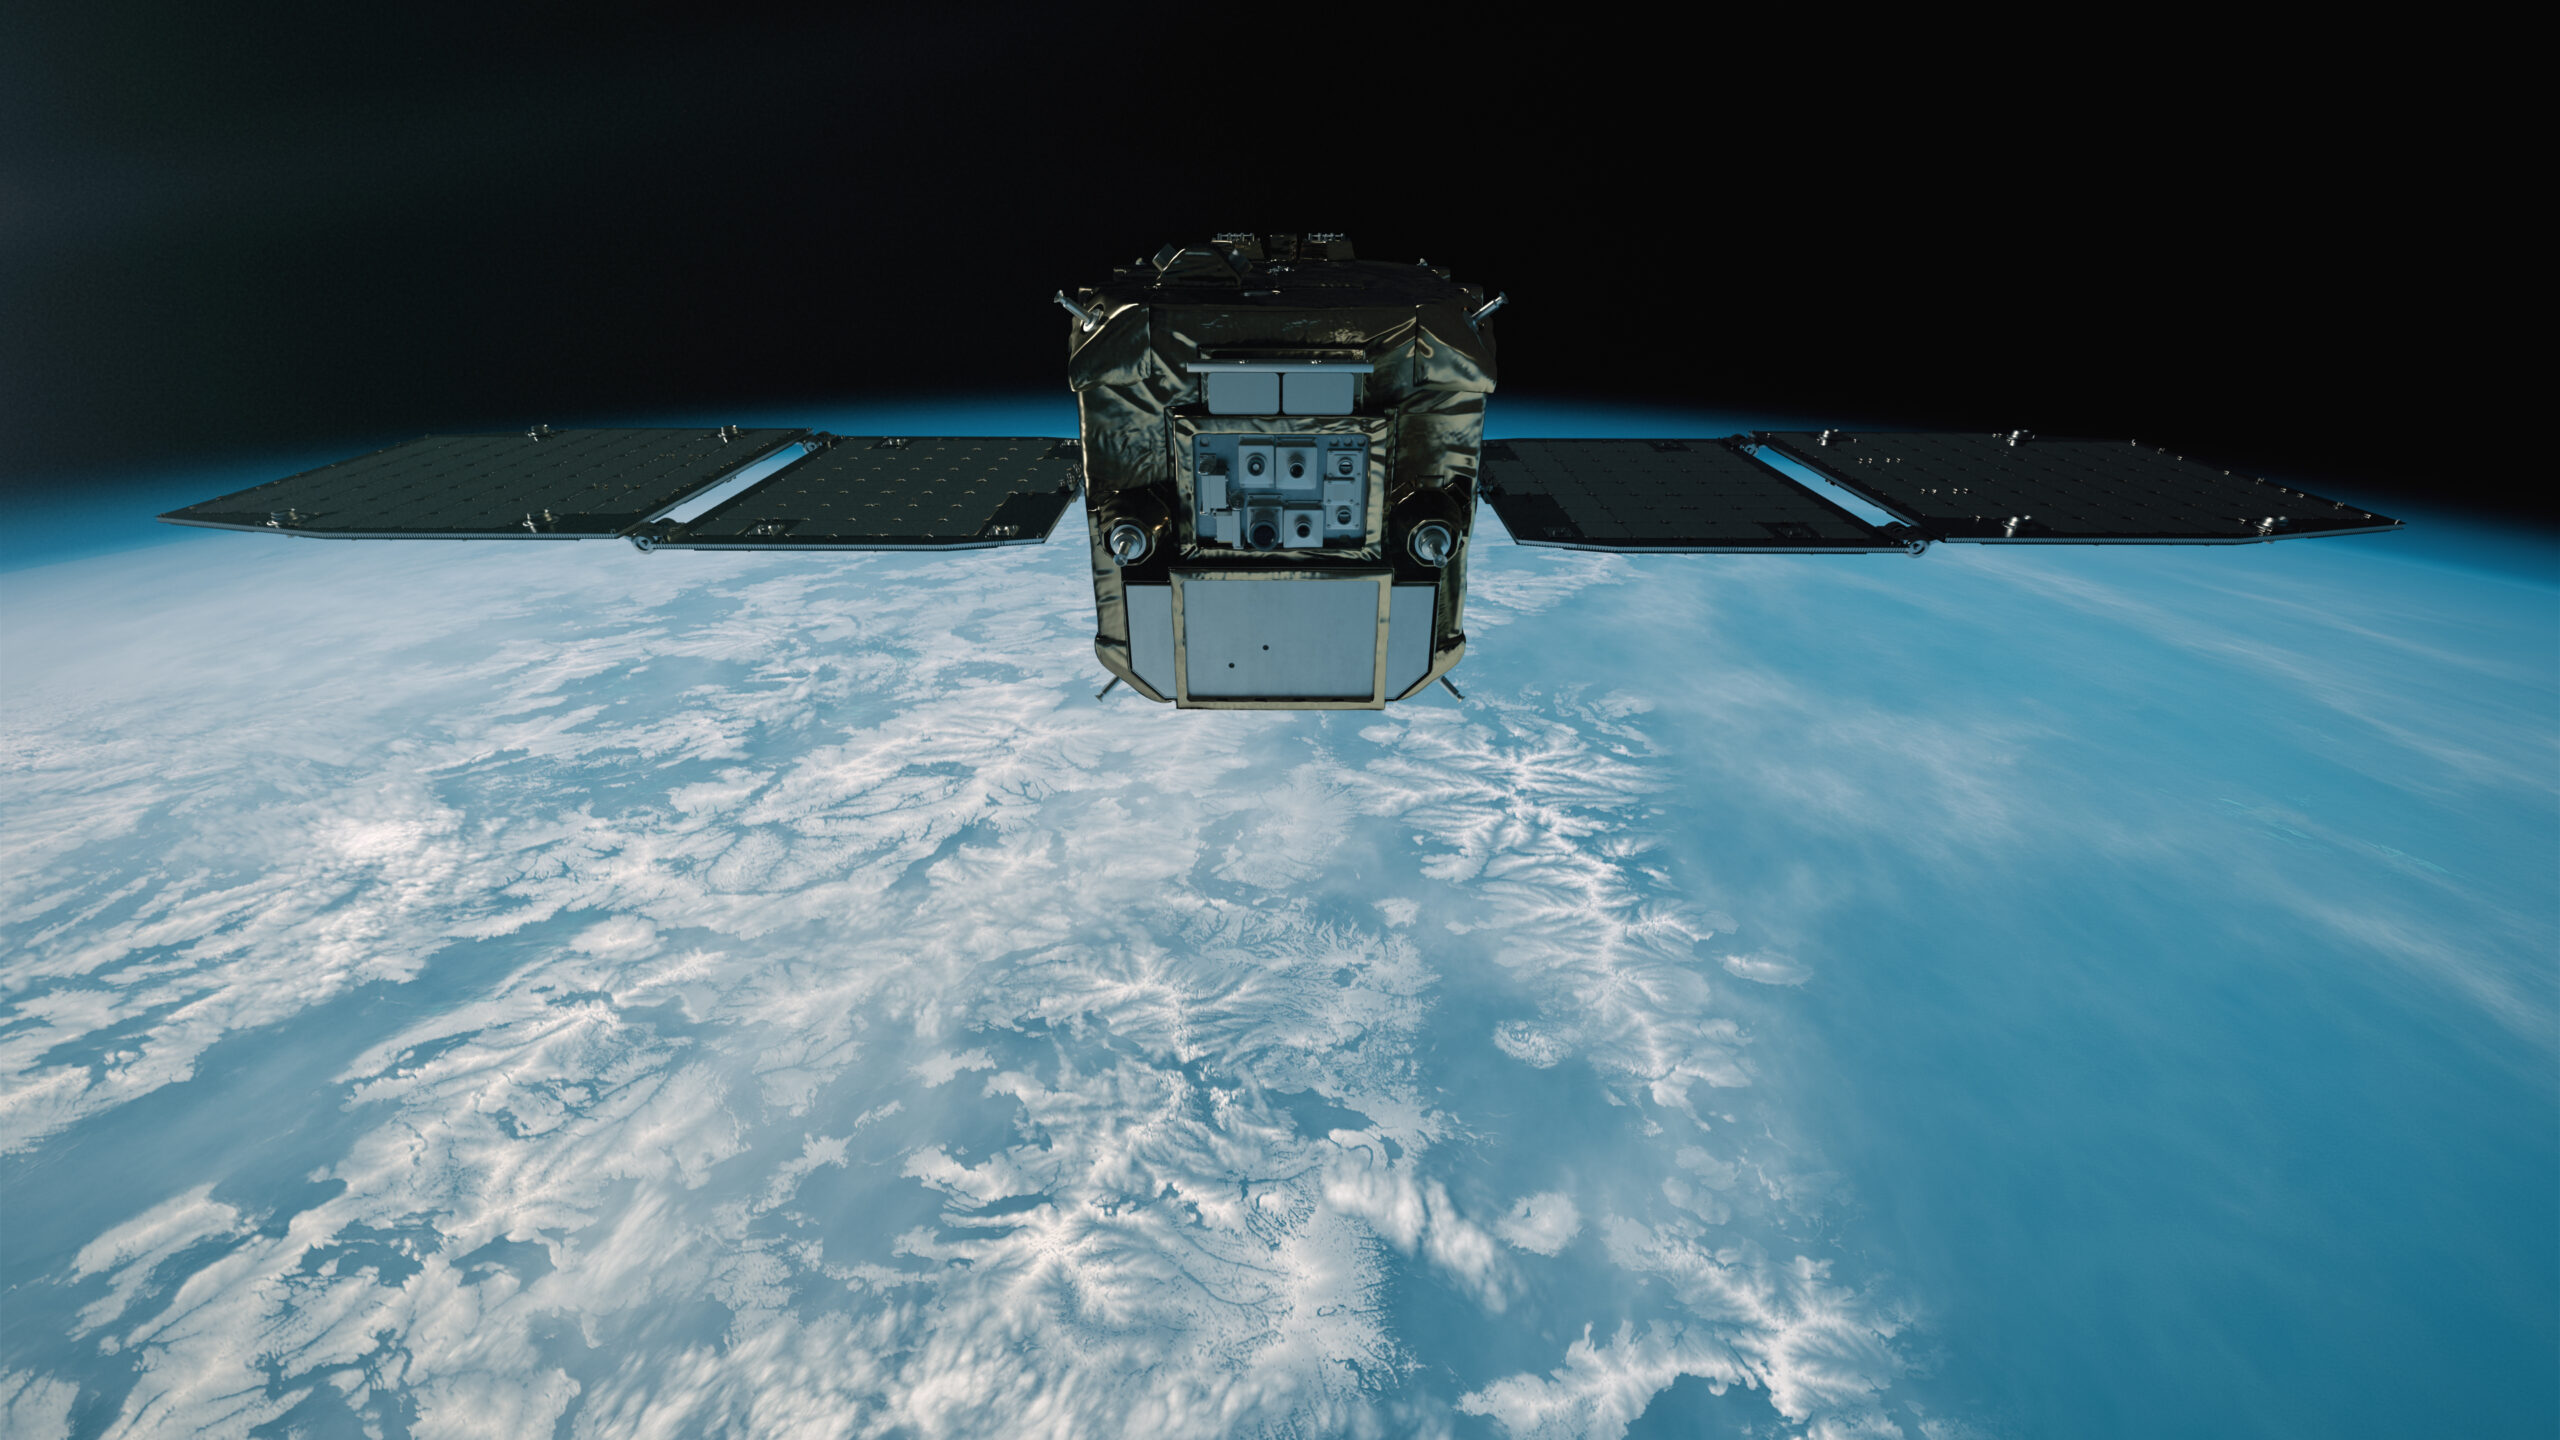 アストロスケールのデブリ除去実証衛星「ADRAS-J」、ターゲットまで数百mの距離に接近